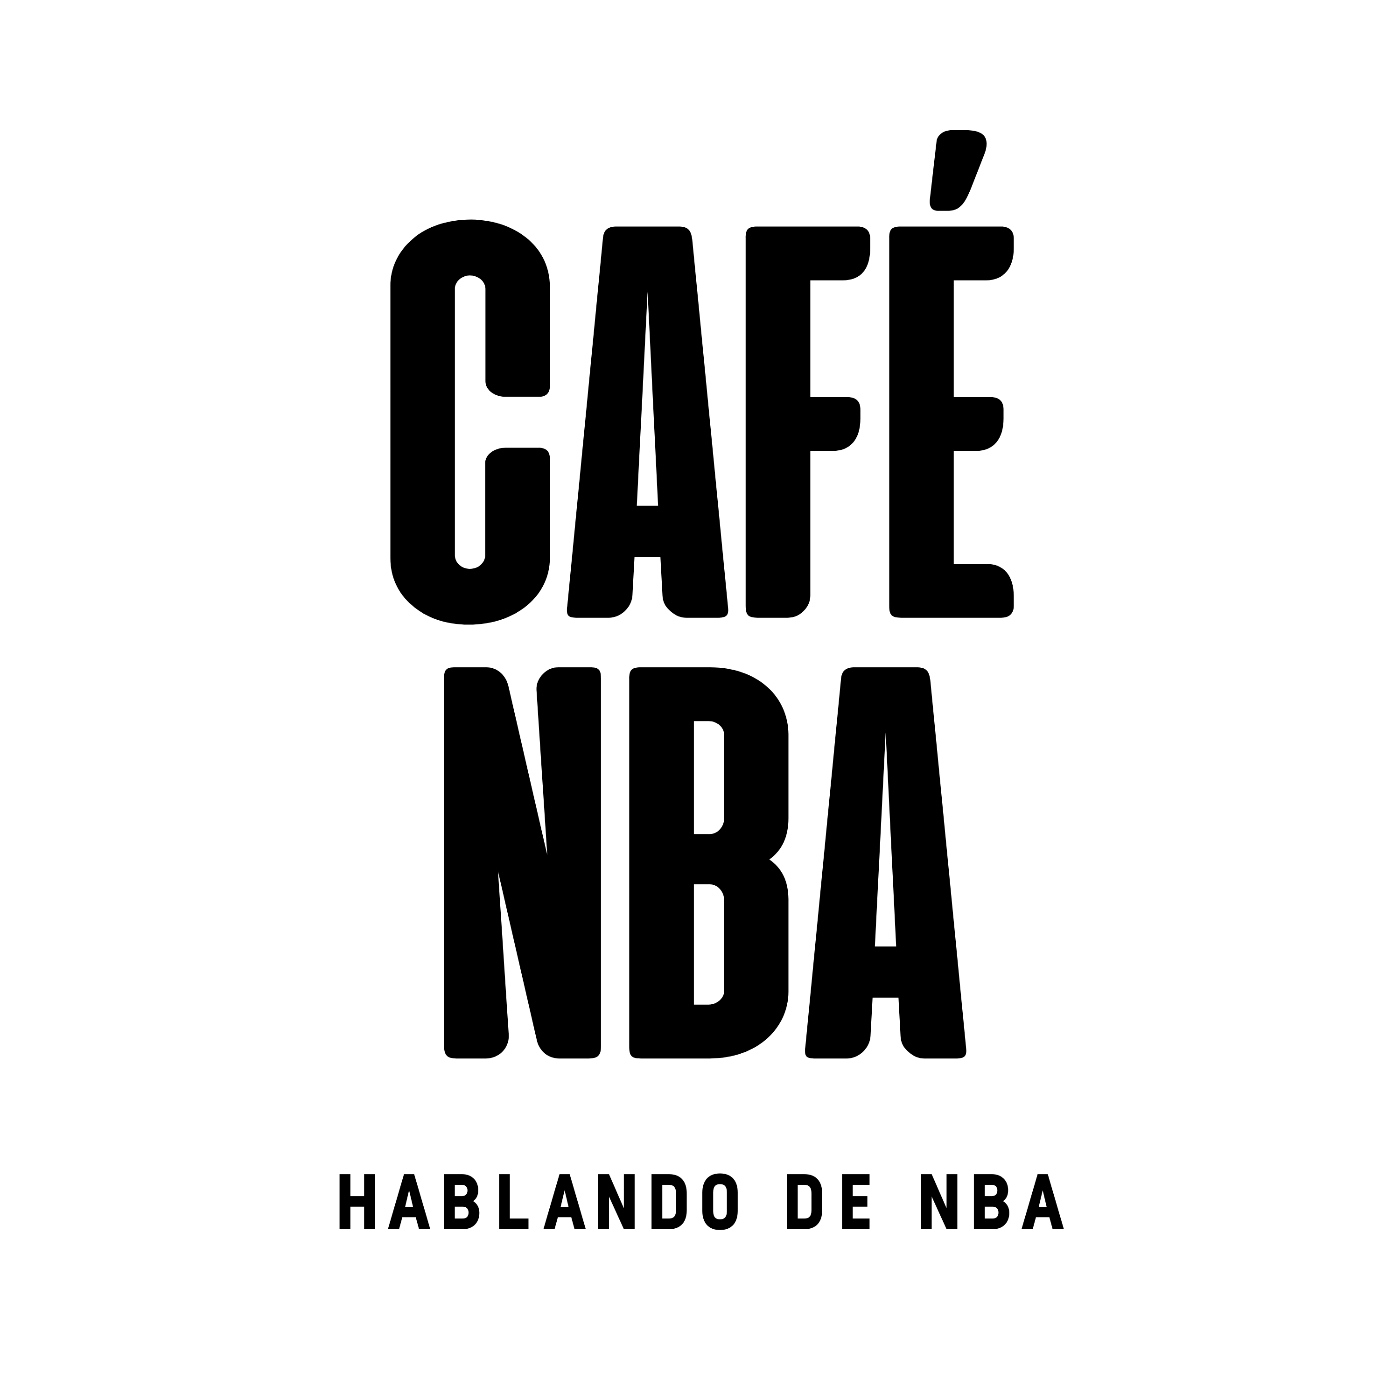 El nuevo torneo NBA es un éxito, una retirada sorpresa, y mucho más (Café NBA)